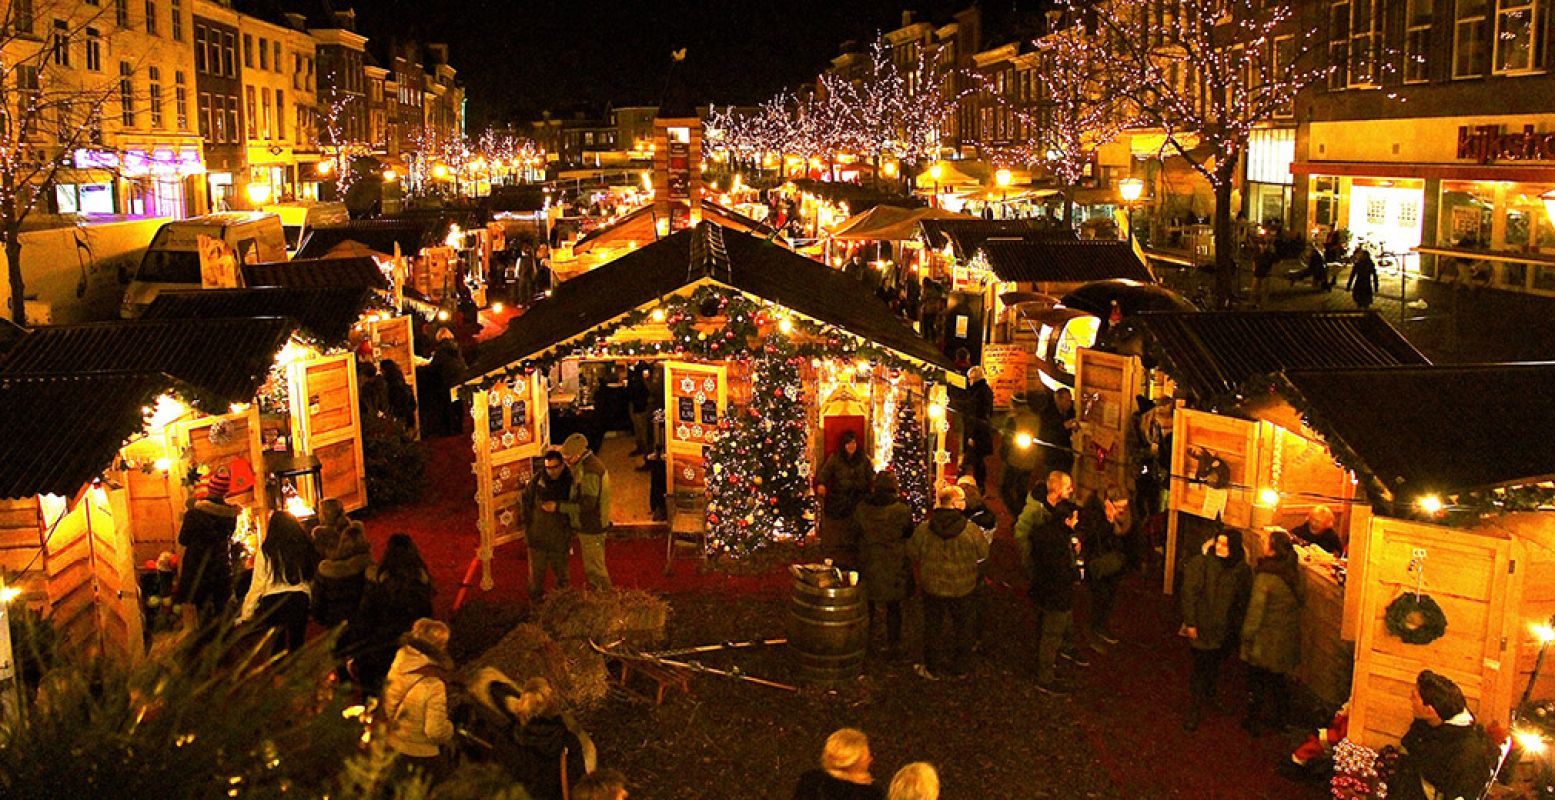 De drijvende kerstmarkt in Leiden. Lichtjes reflecteren in het water tussen de kerstchaletjes. Foto: Leiden Marketing